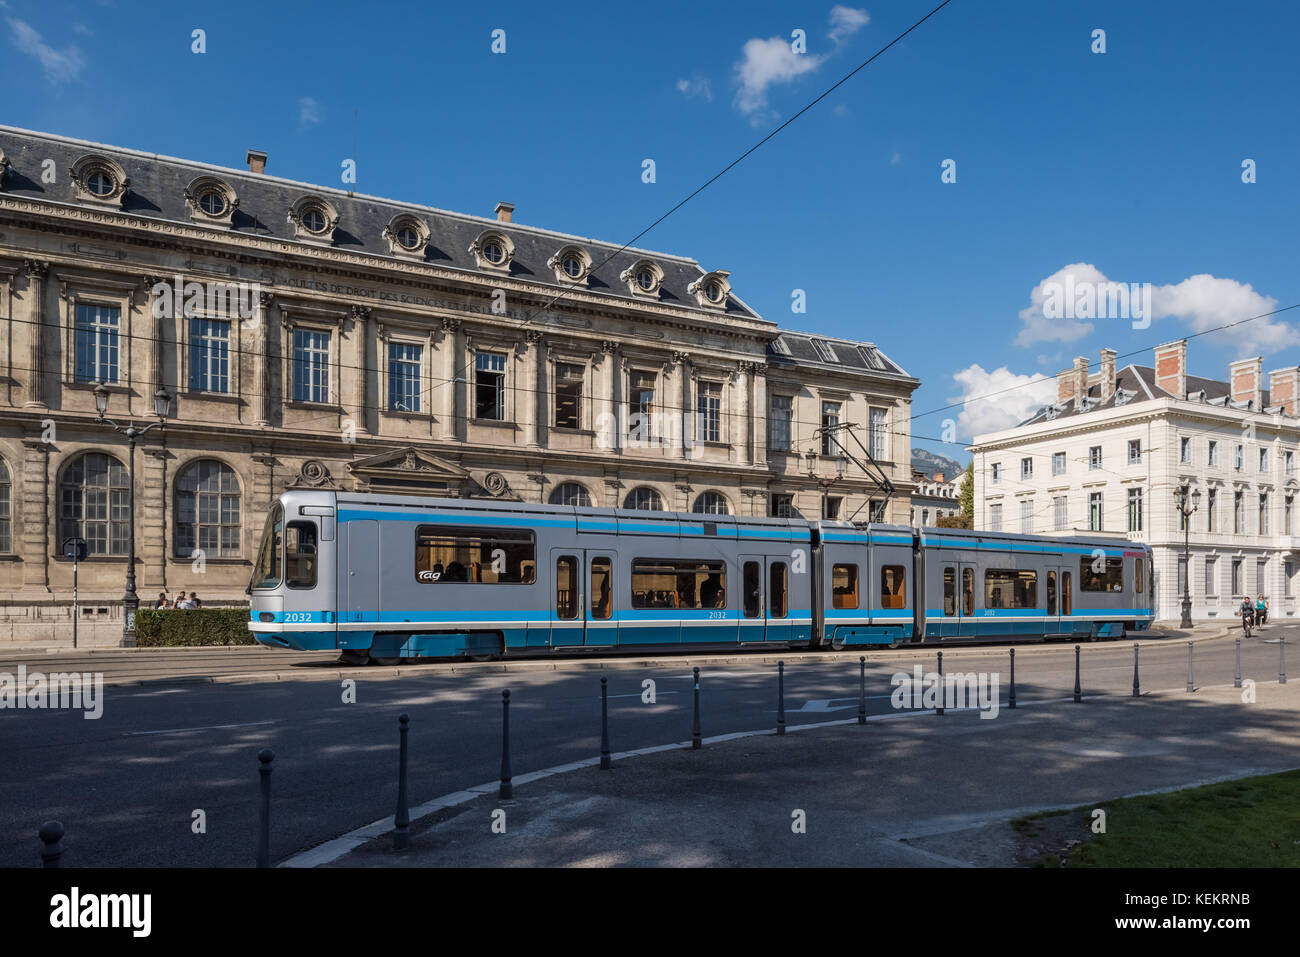 Grenoble, la société Straßenbahn suis Place de Verdun - Grenoble, tramway moderne à la Place de Verdun Banque D'Images